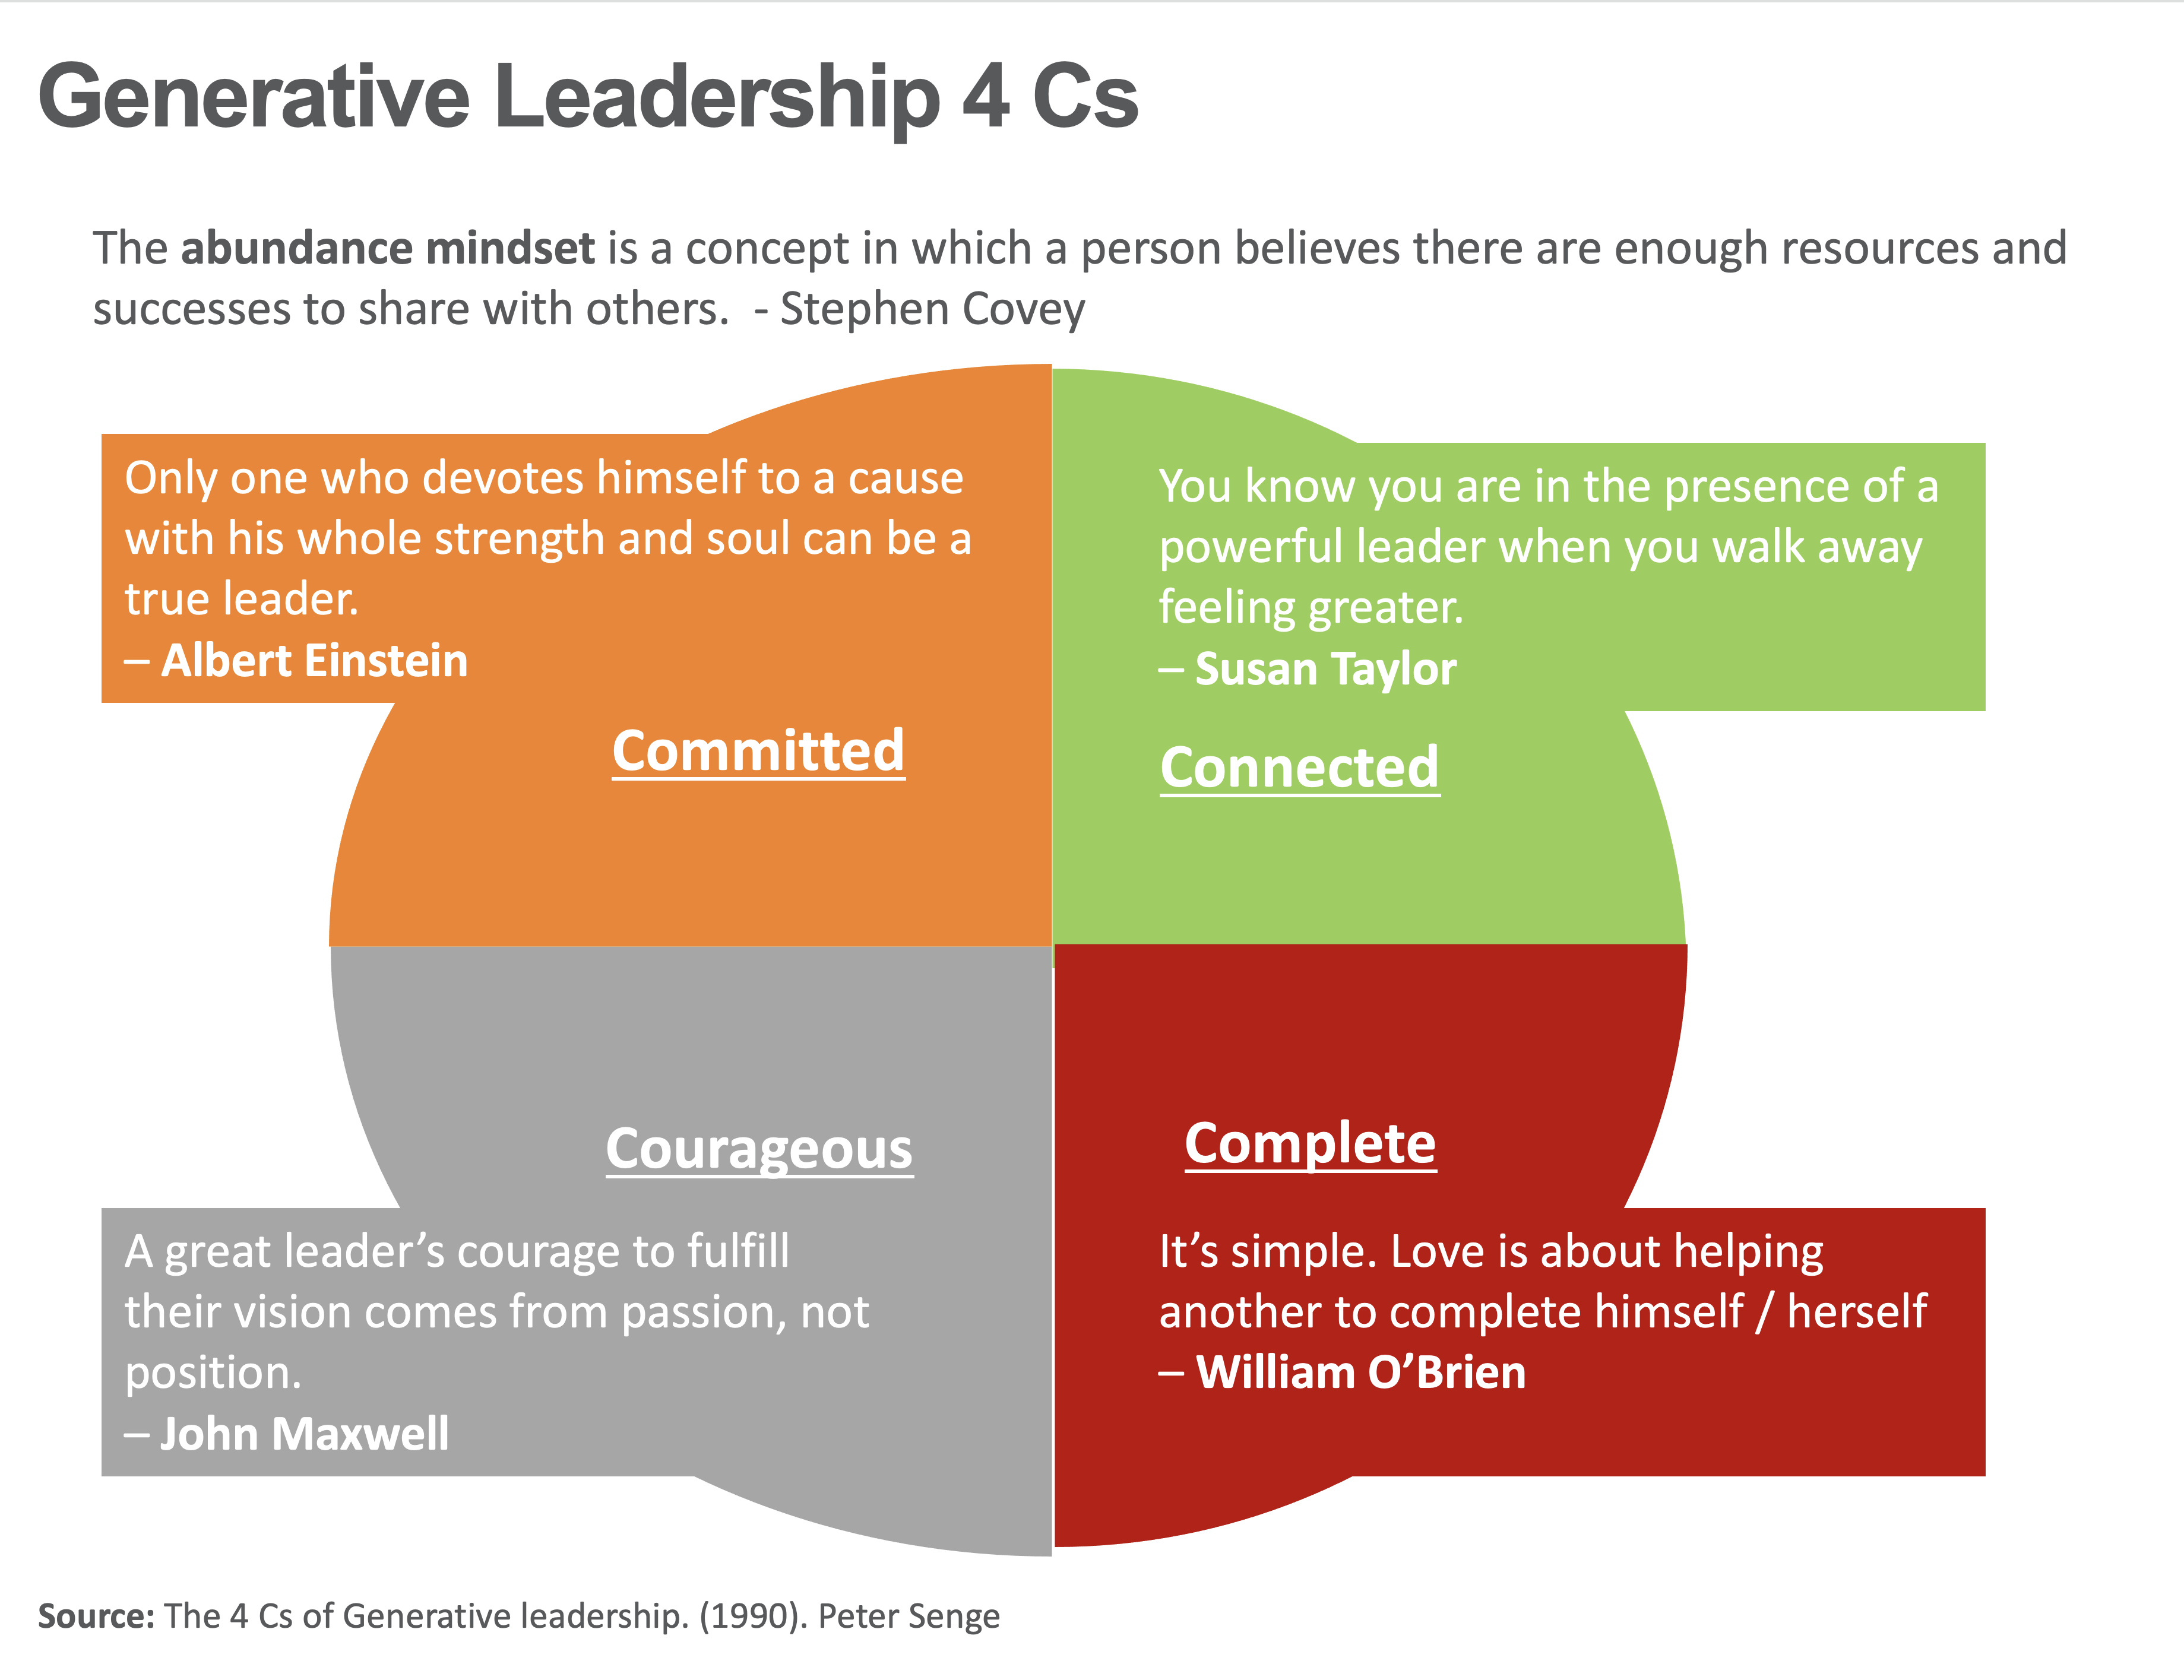 Generative Leadership 4Cs